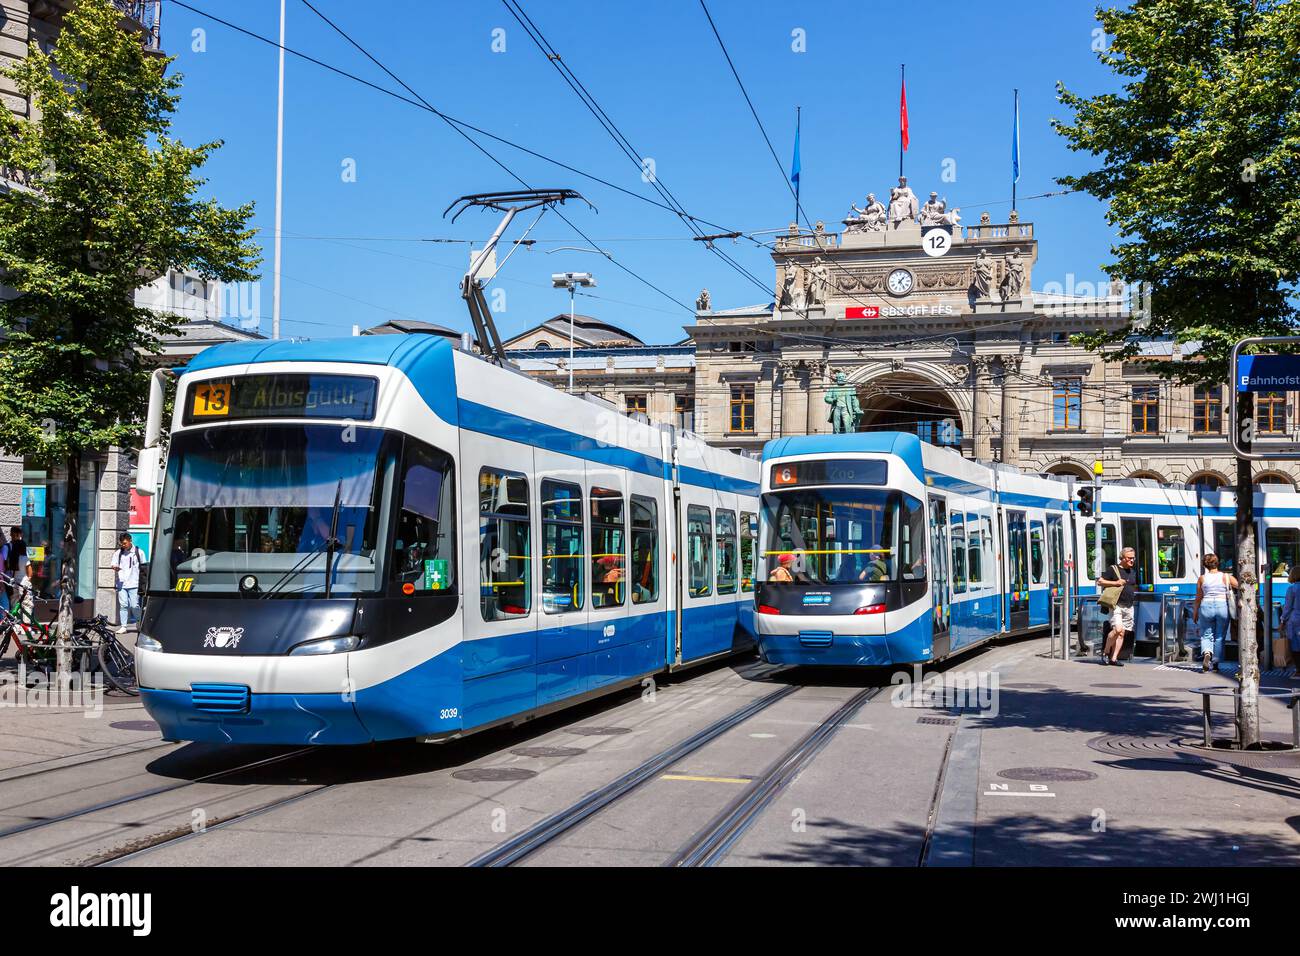 Bahnhofstrasse mit Straßenbahnen des Typs Cobra-Tram in Zürich, Schweiz Stockfoto